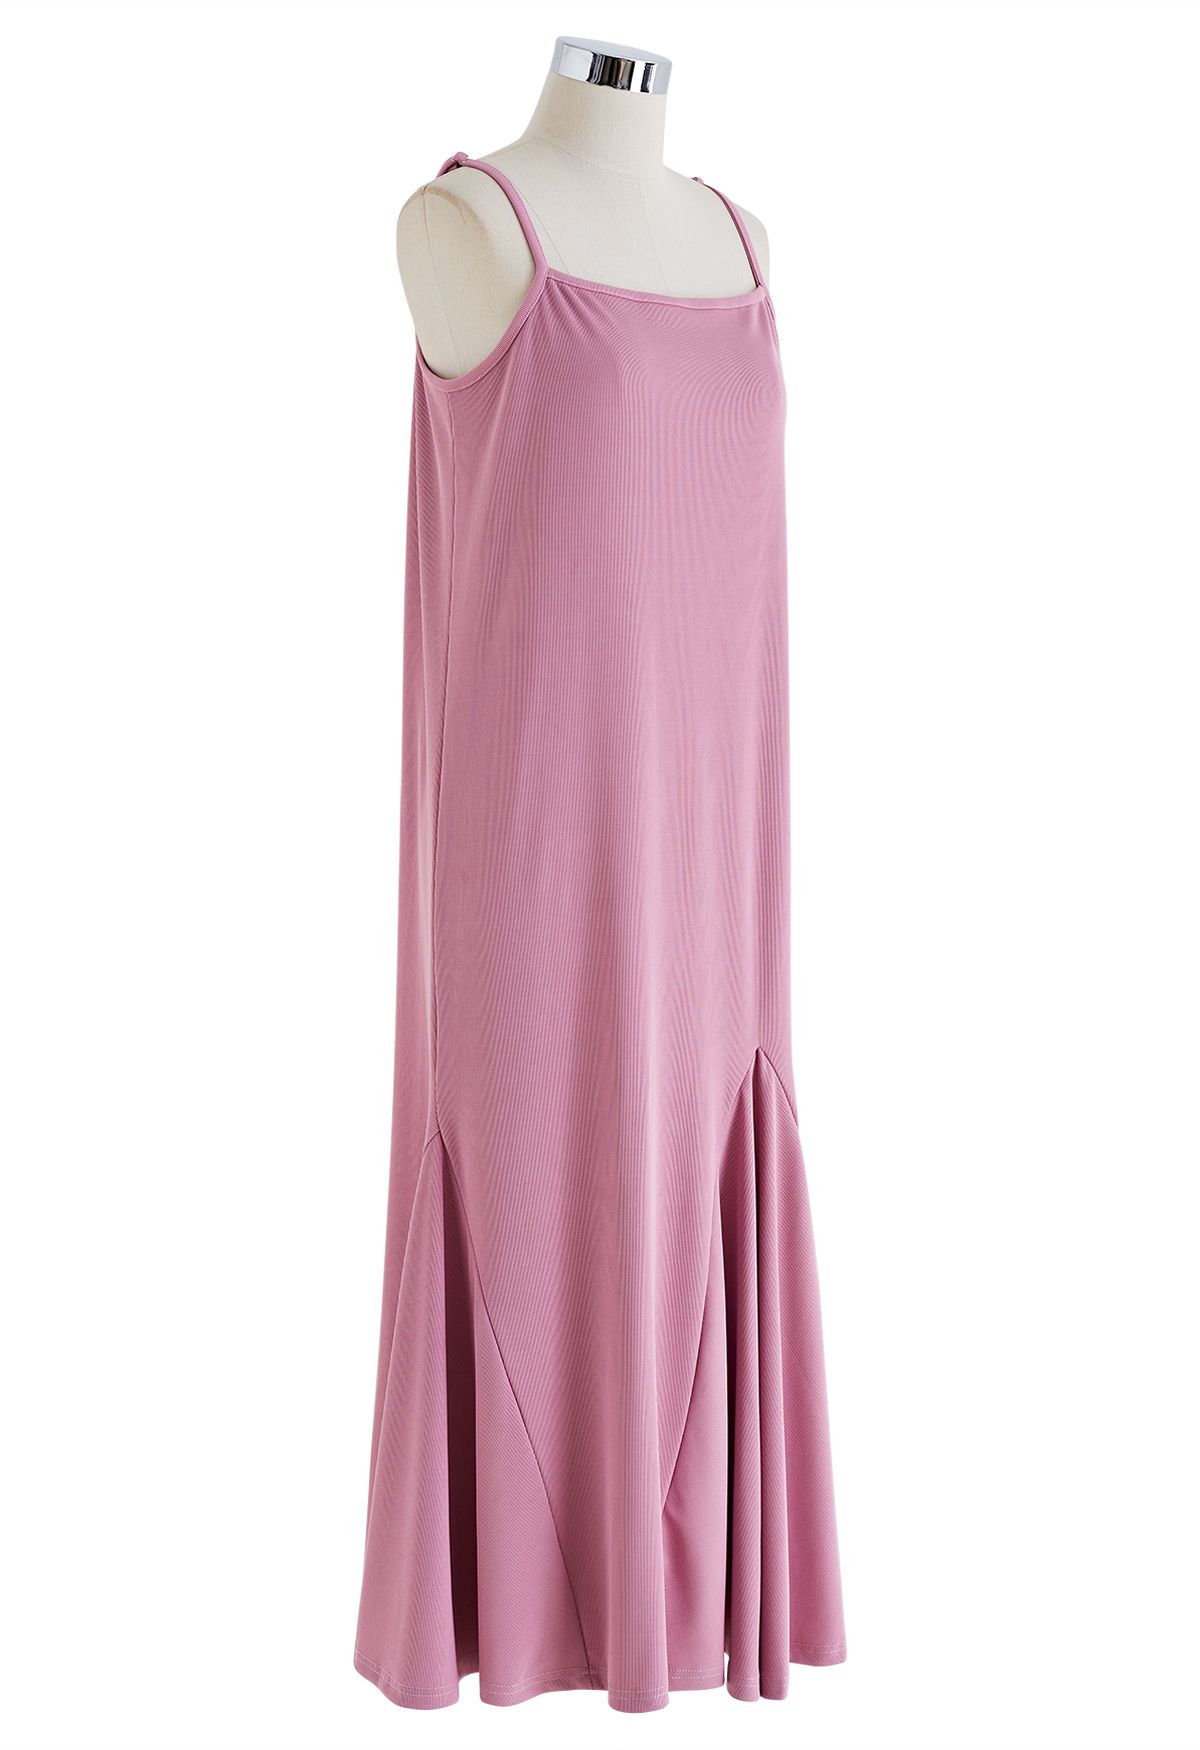 Einfarbiges Cami-Kleid mit Rüschensaum in Pink